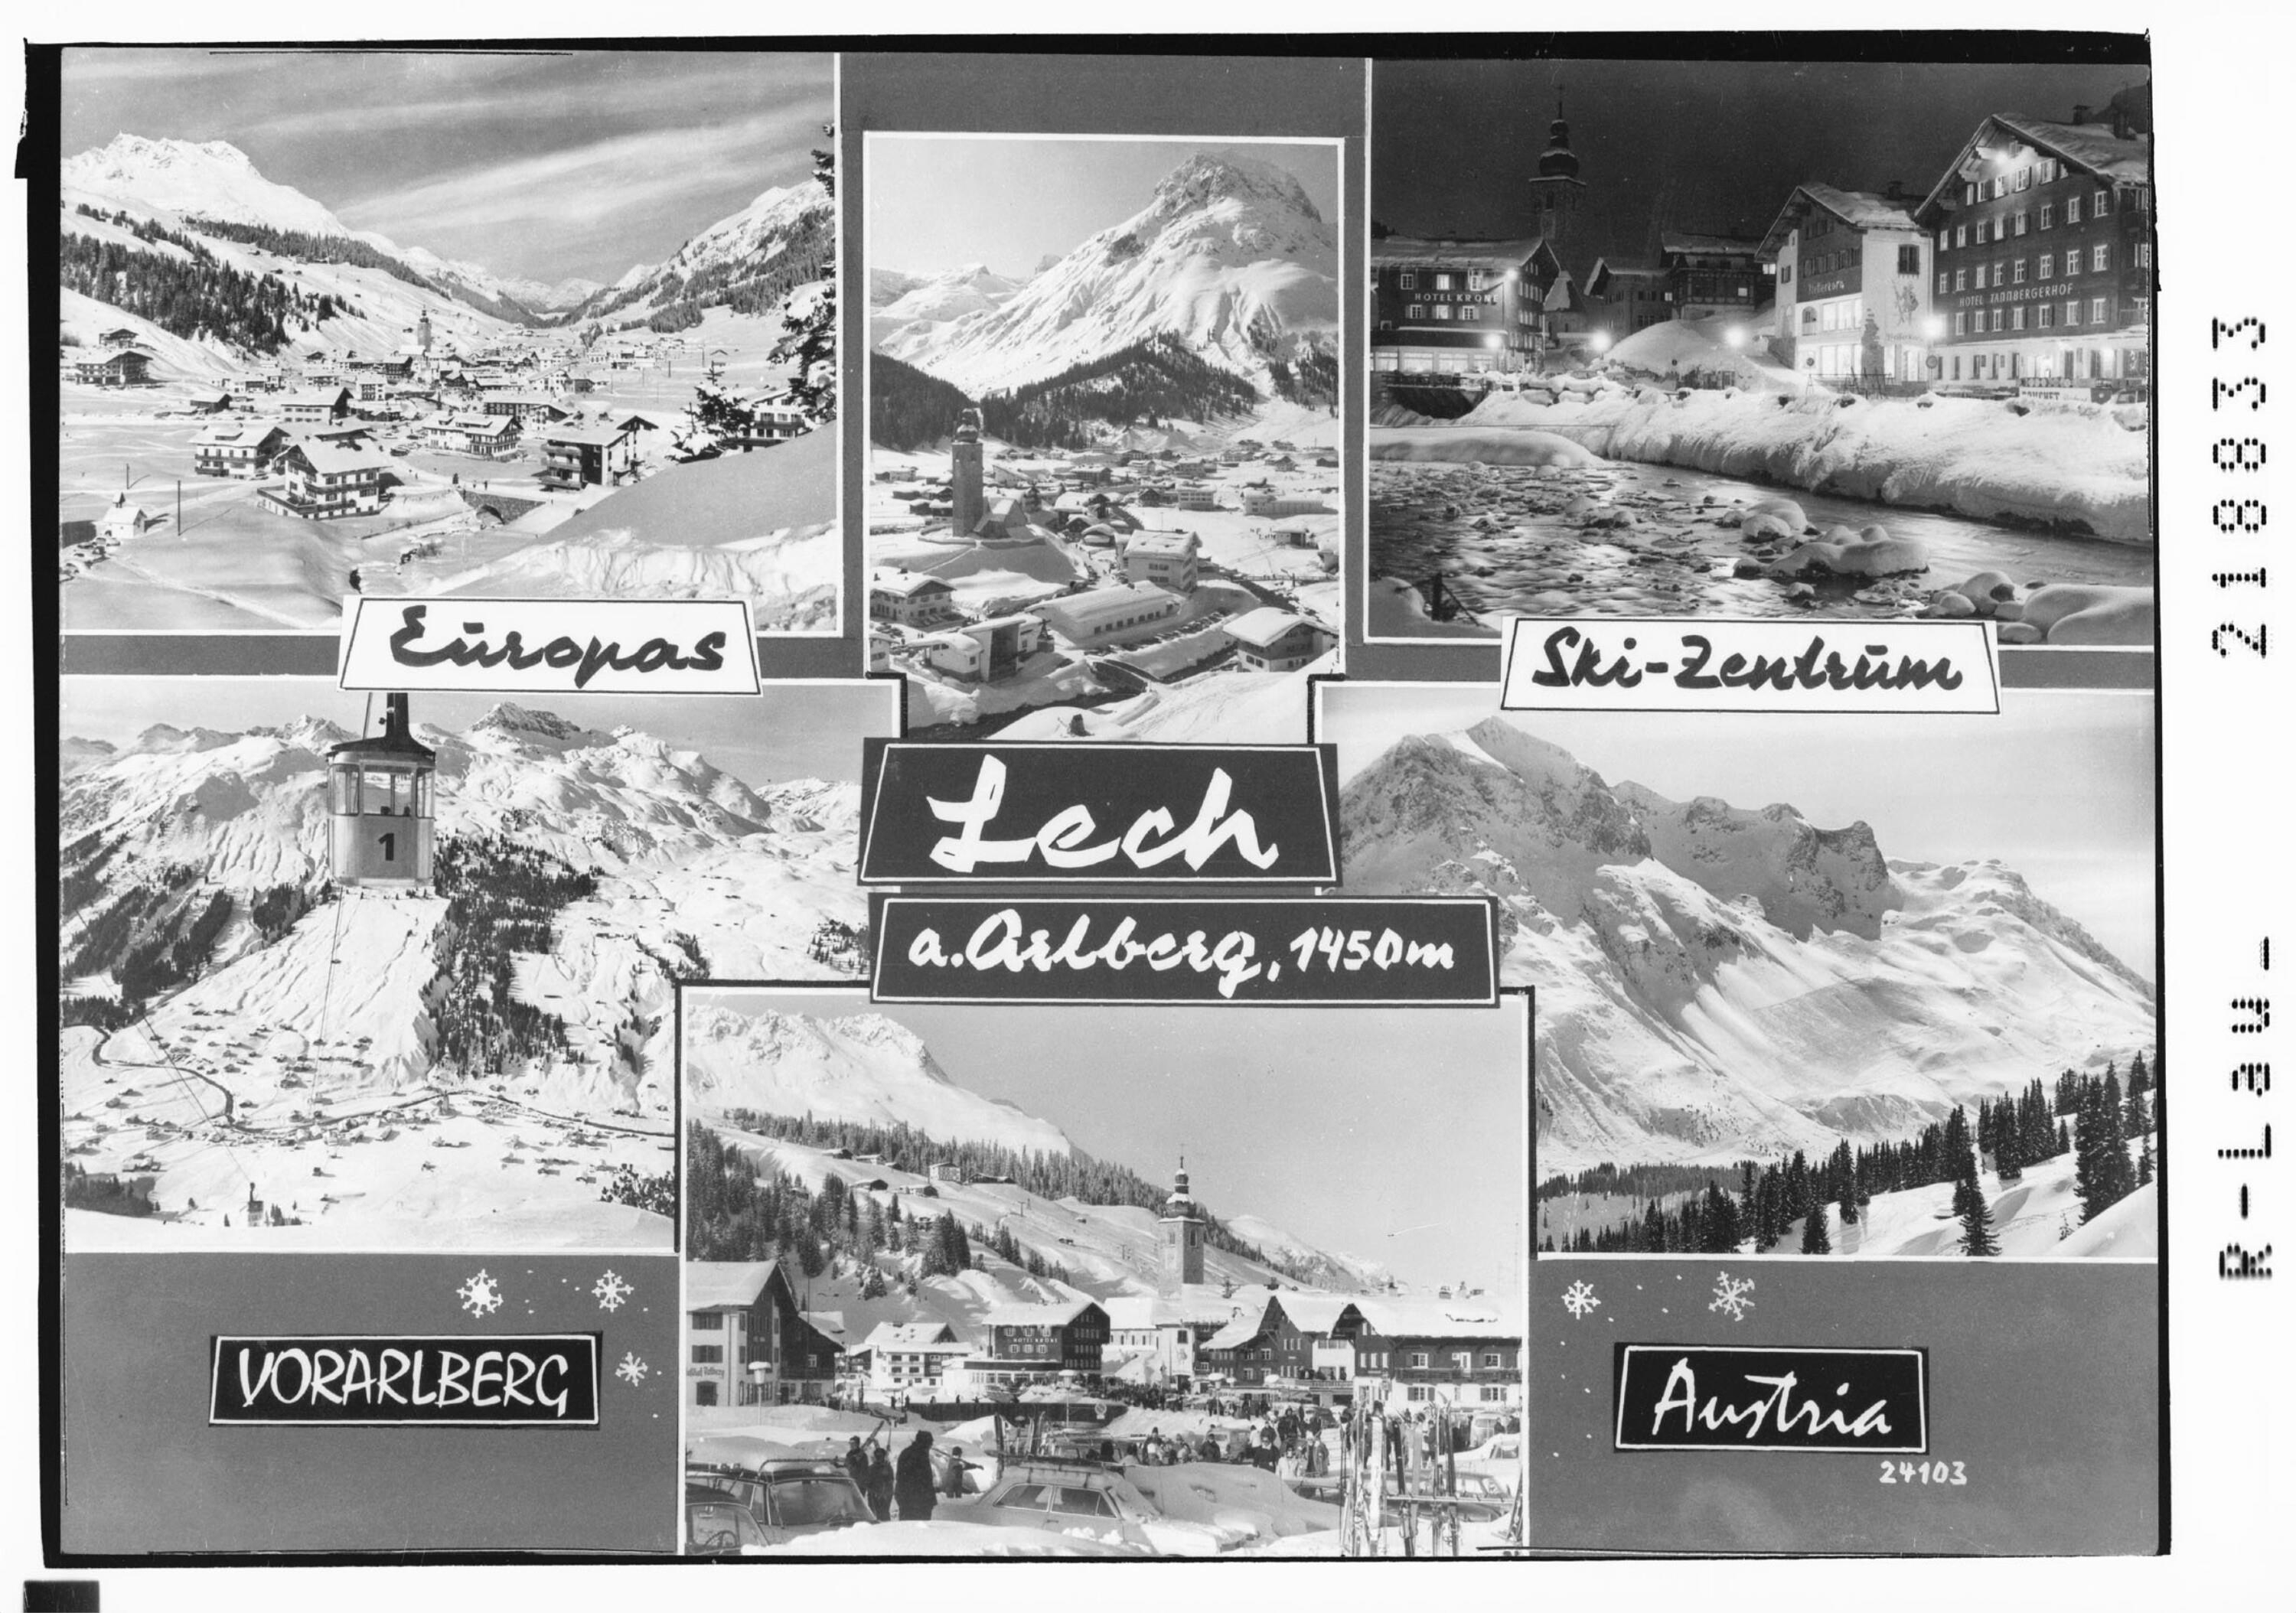 Europas Skizentrum Lech am Arlberg 1450 m></div>


    <hr>
    <div class=